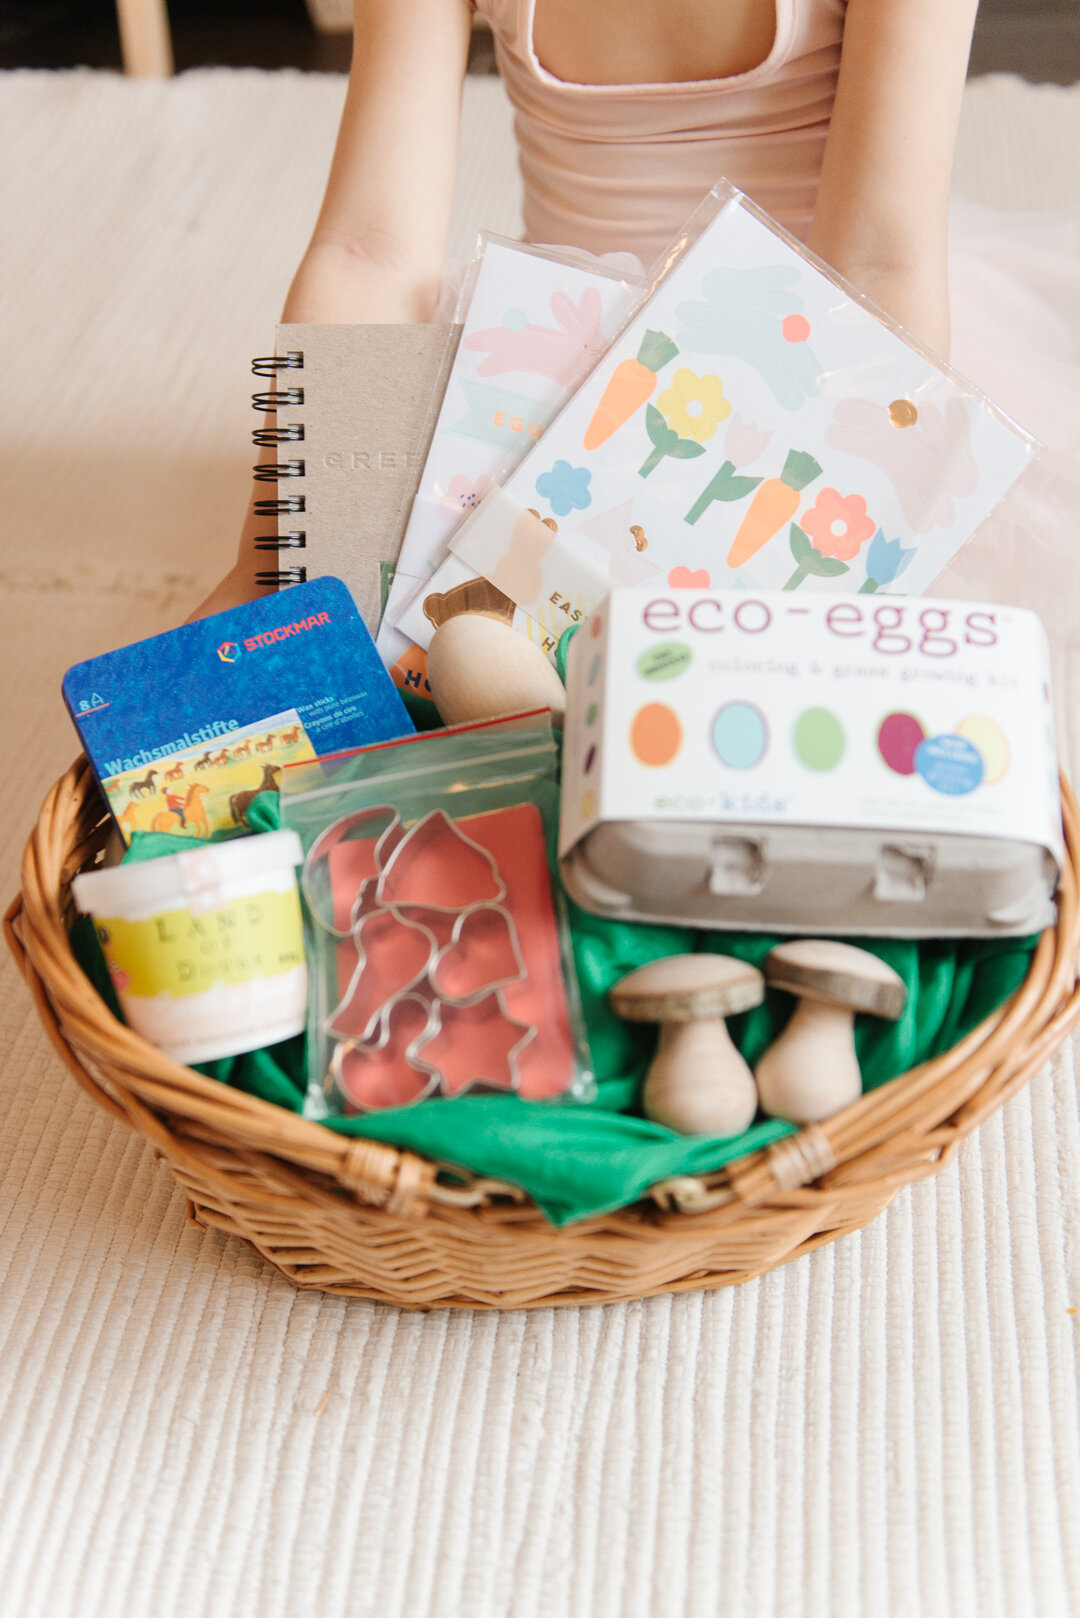 10+ Inexpensive Easter Basket Filler Ideas for Little Kids – MOB Moms